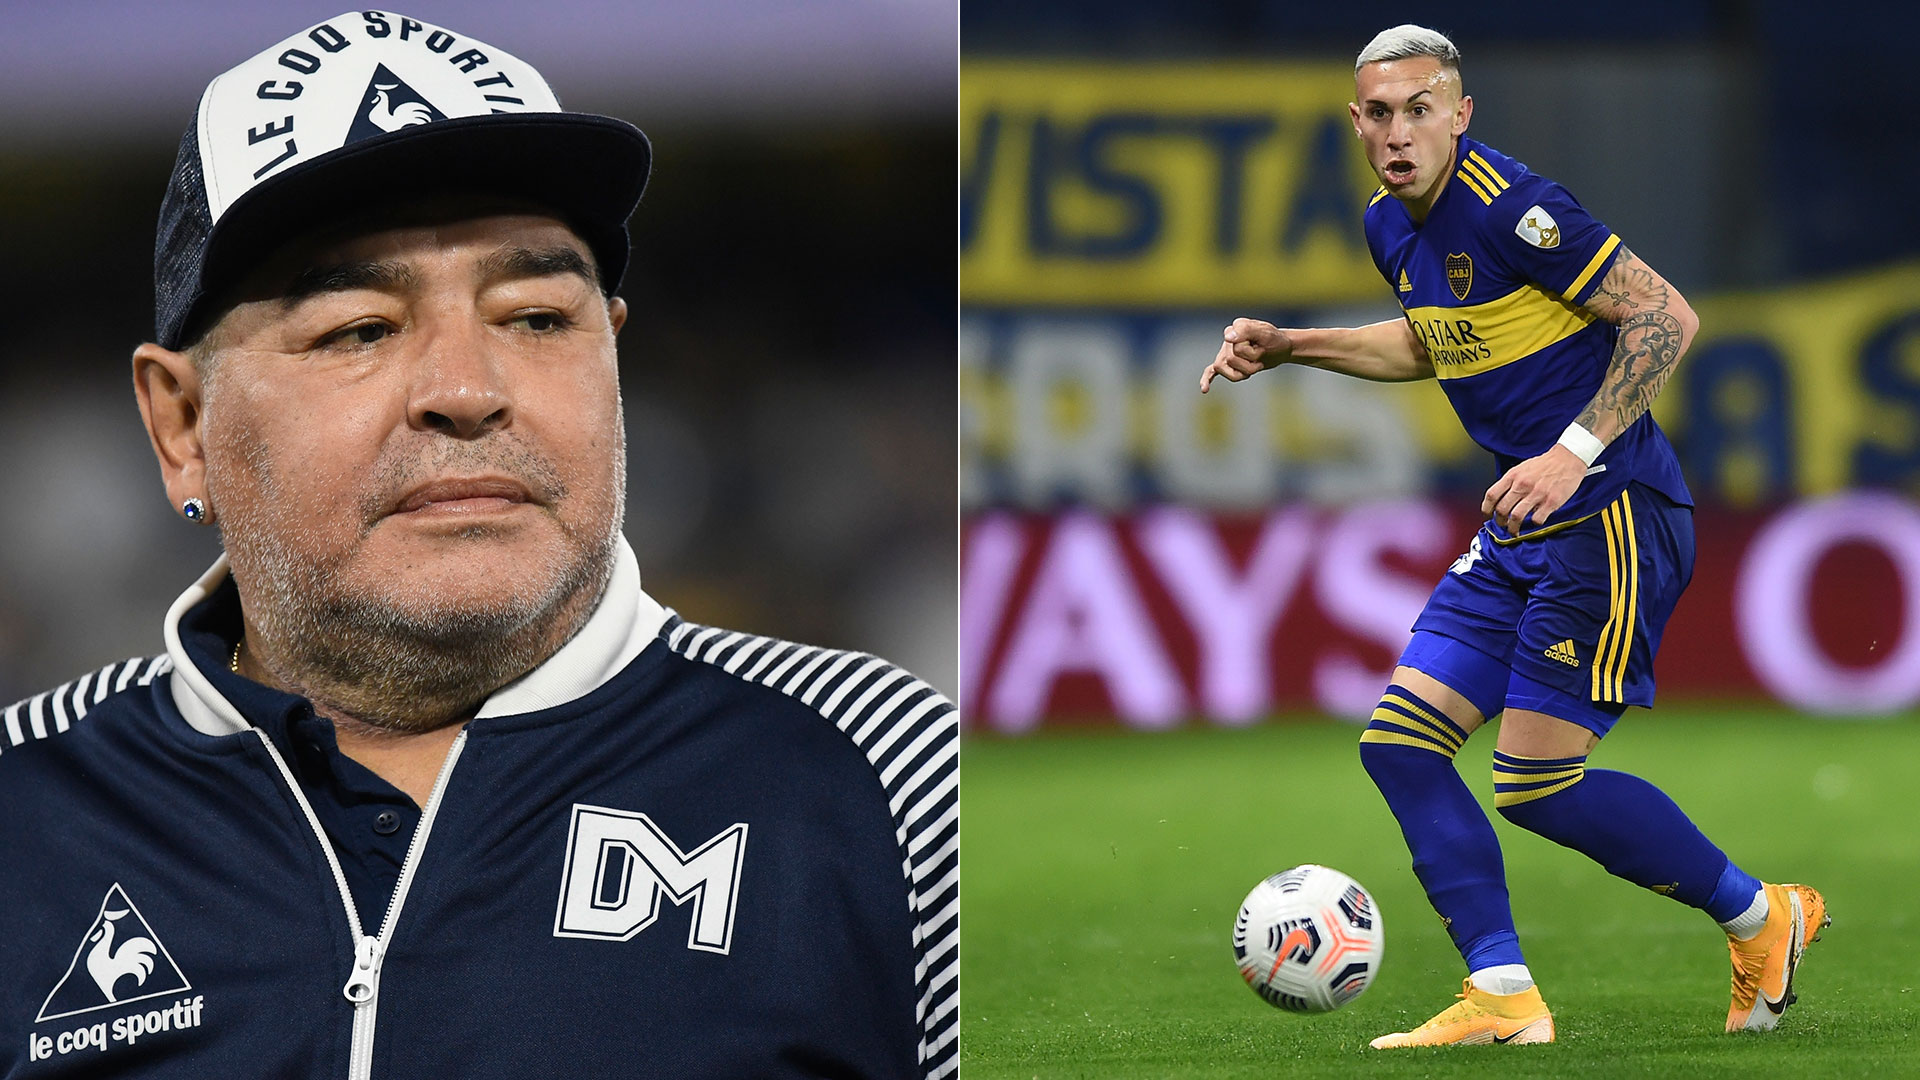 Un antiguo elogio de Diego Maradona a Norberto Briasco se volvió viral: “Es un animal”